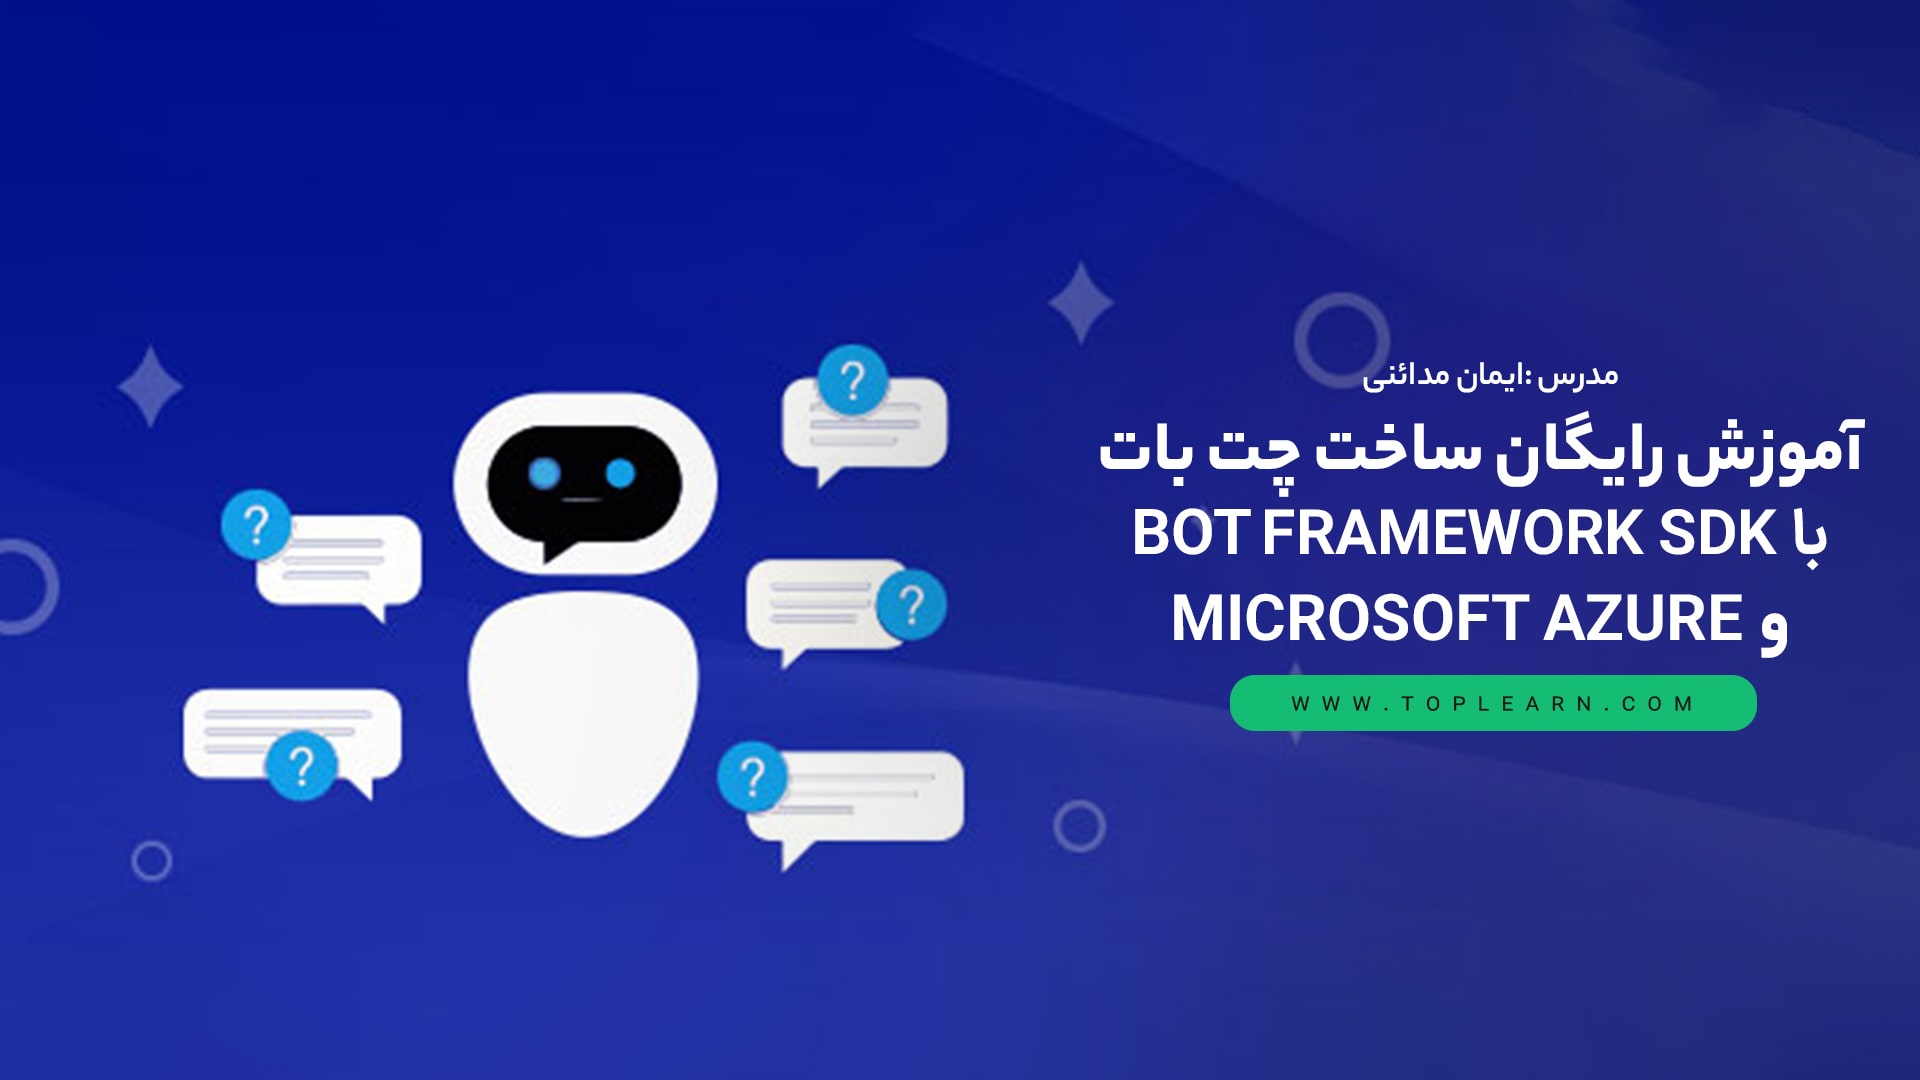 آموزش رایگان ساخت چت بات با Bot Framework SDK و Microsoft Azure